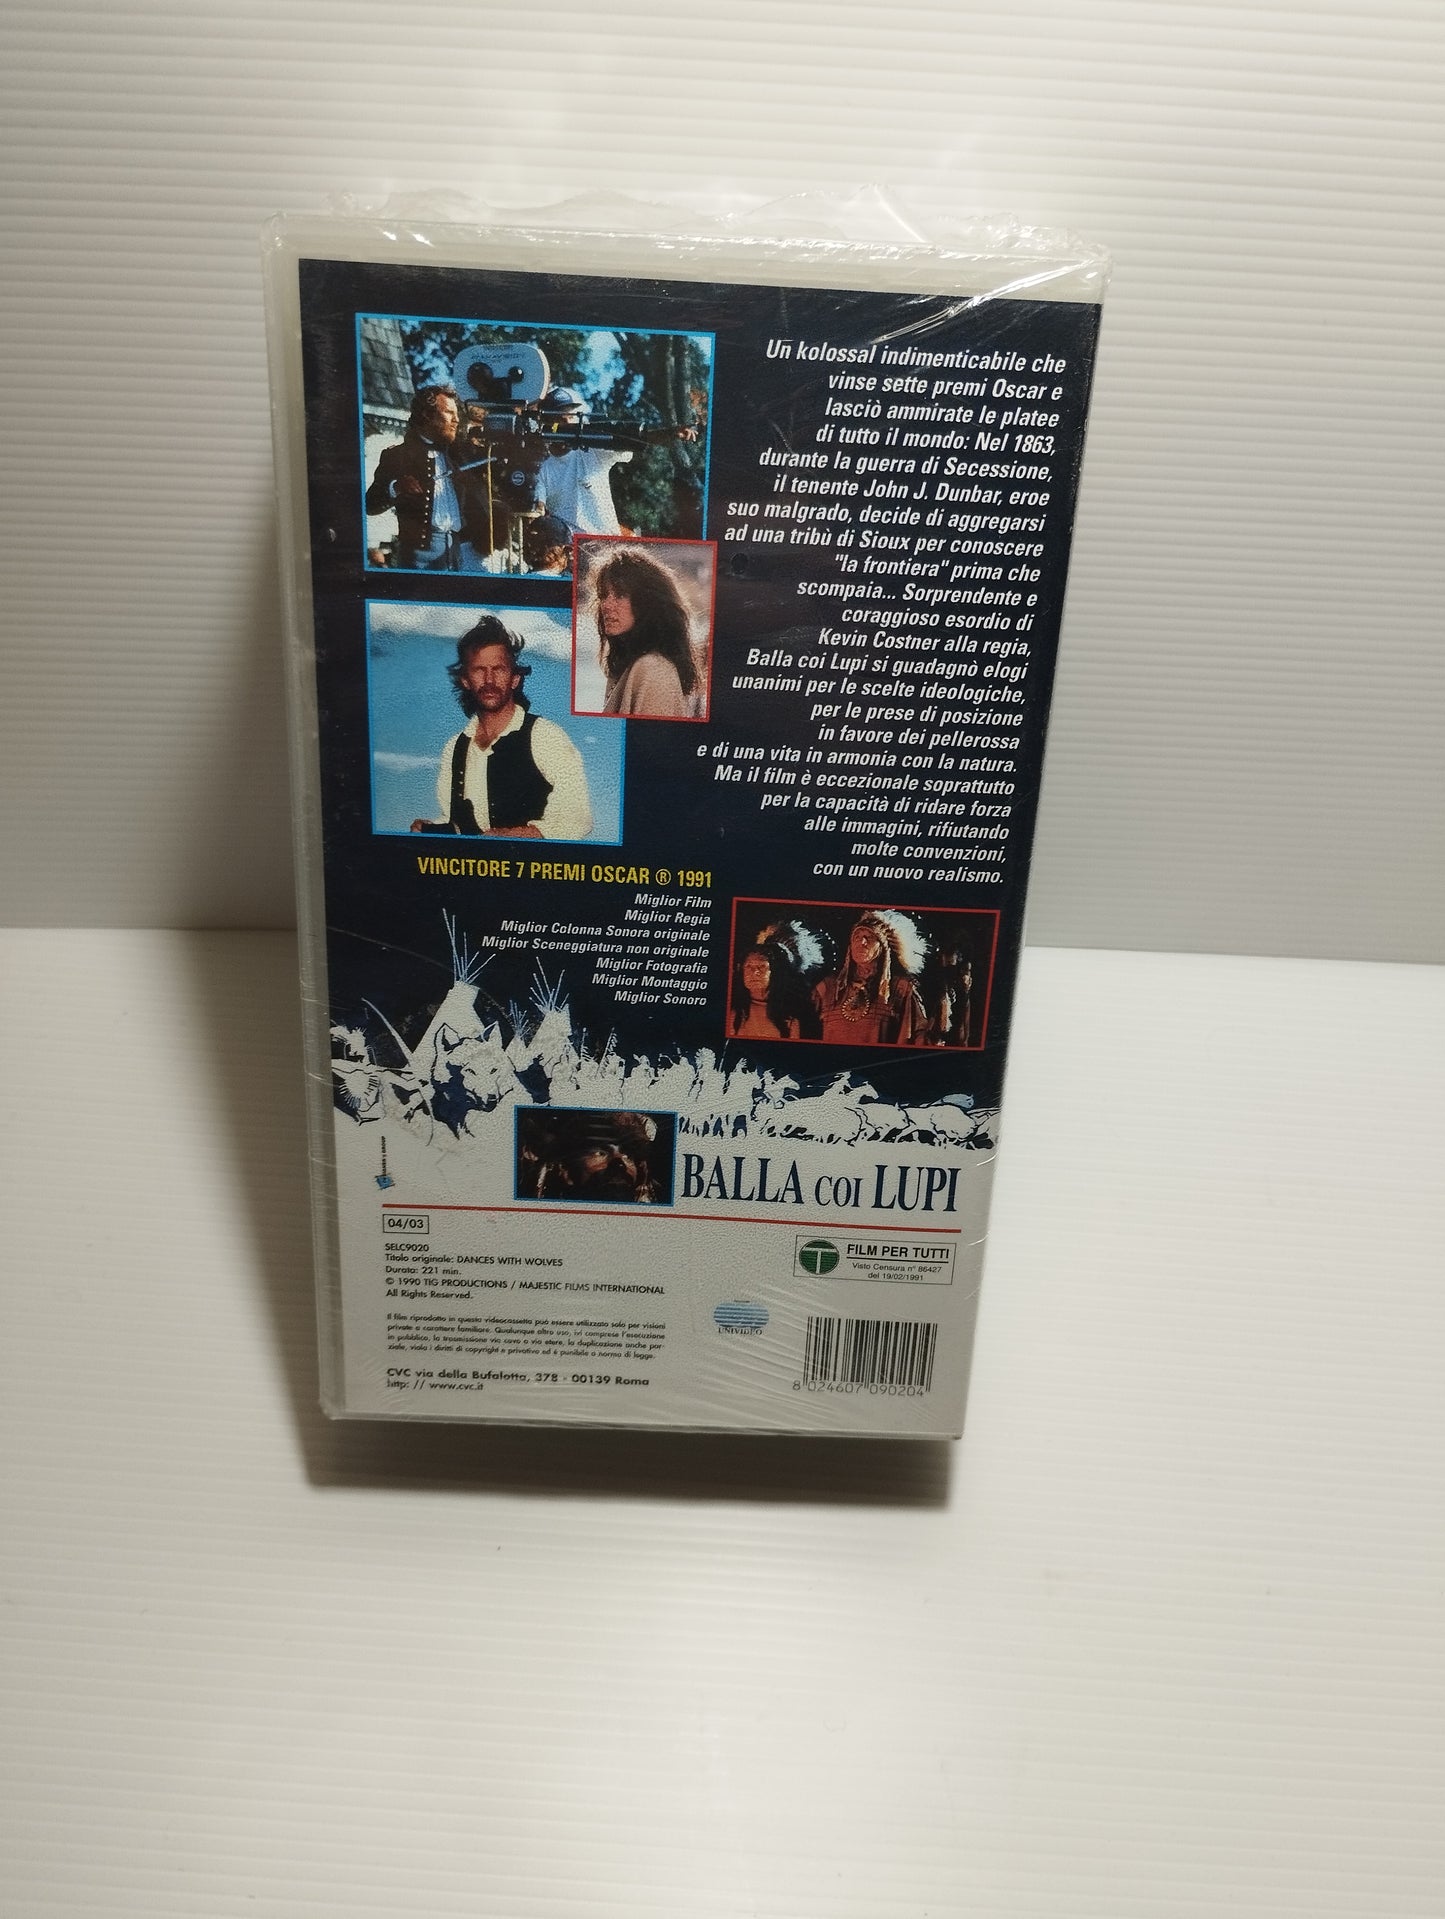 2 VHS Balla coi lupi

Edizione integrale